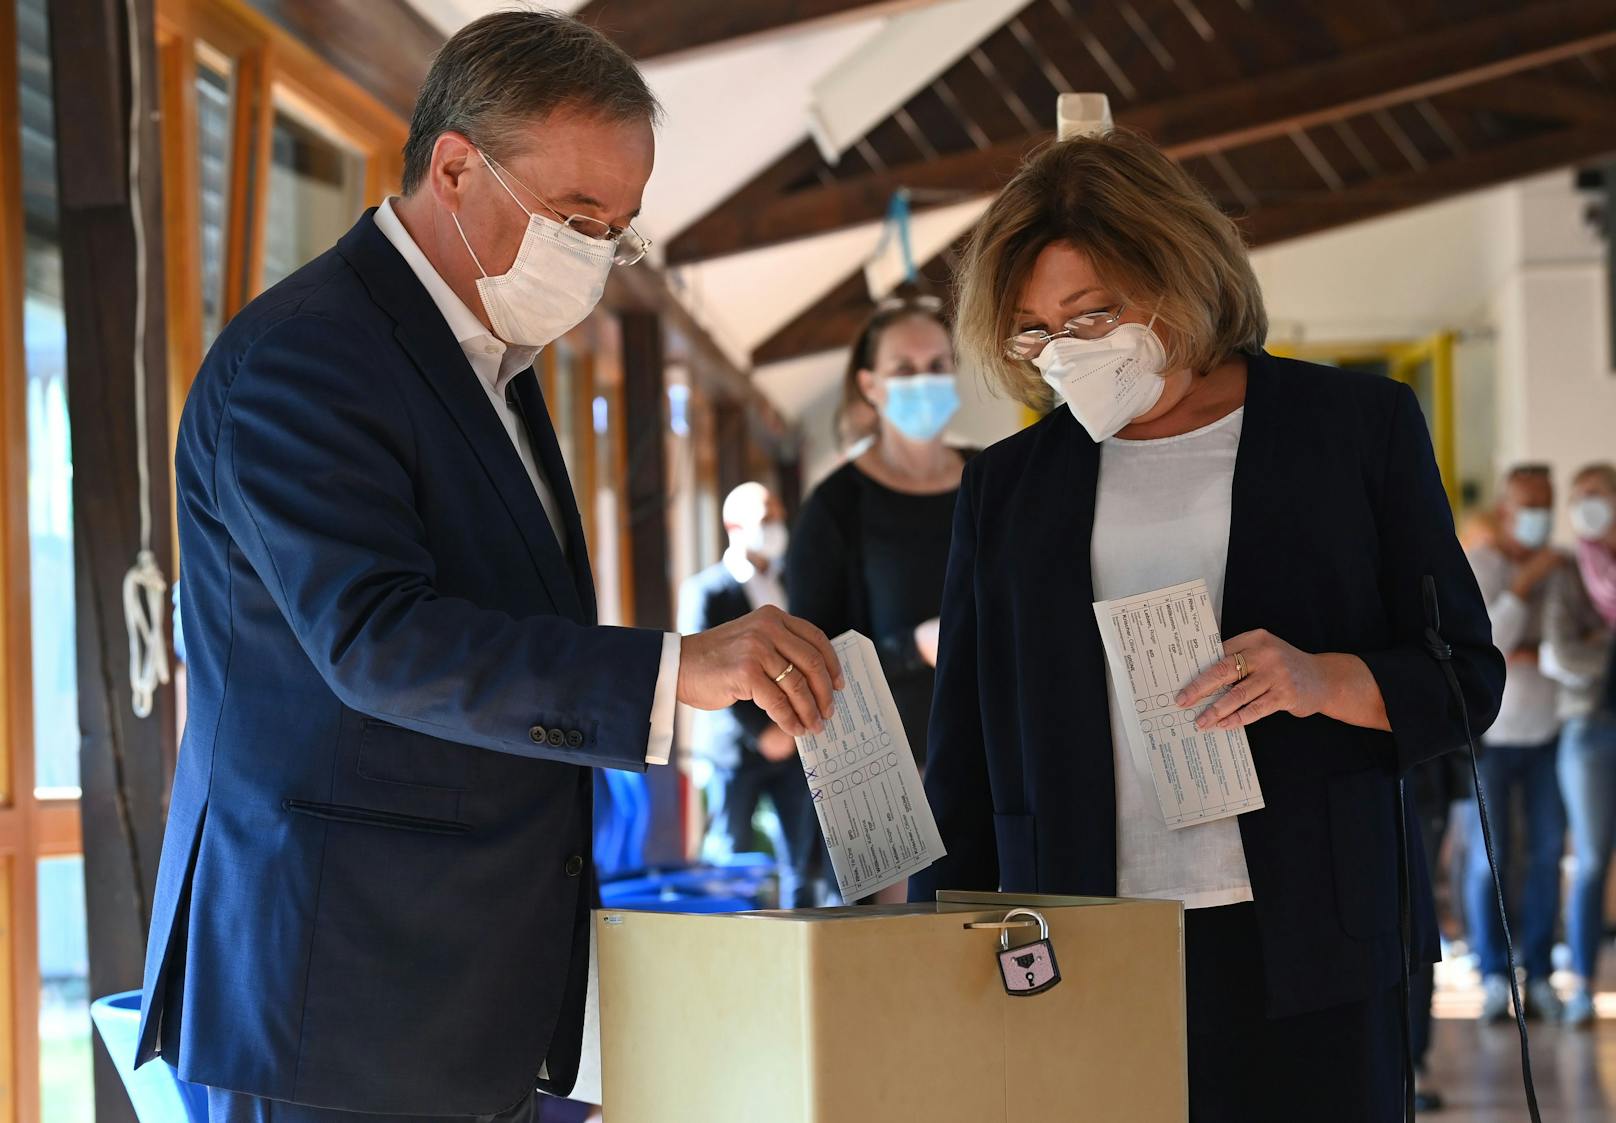 CDU-Kanzlerkandidat Armin Laschet und Frau Susanne falteten ihre Stimmzettel falsch.